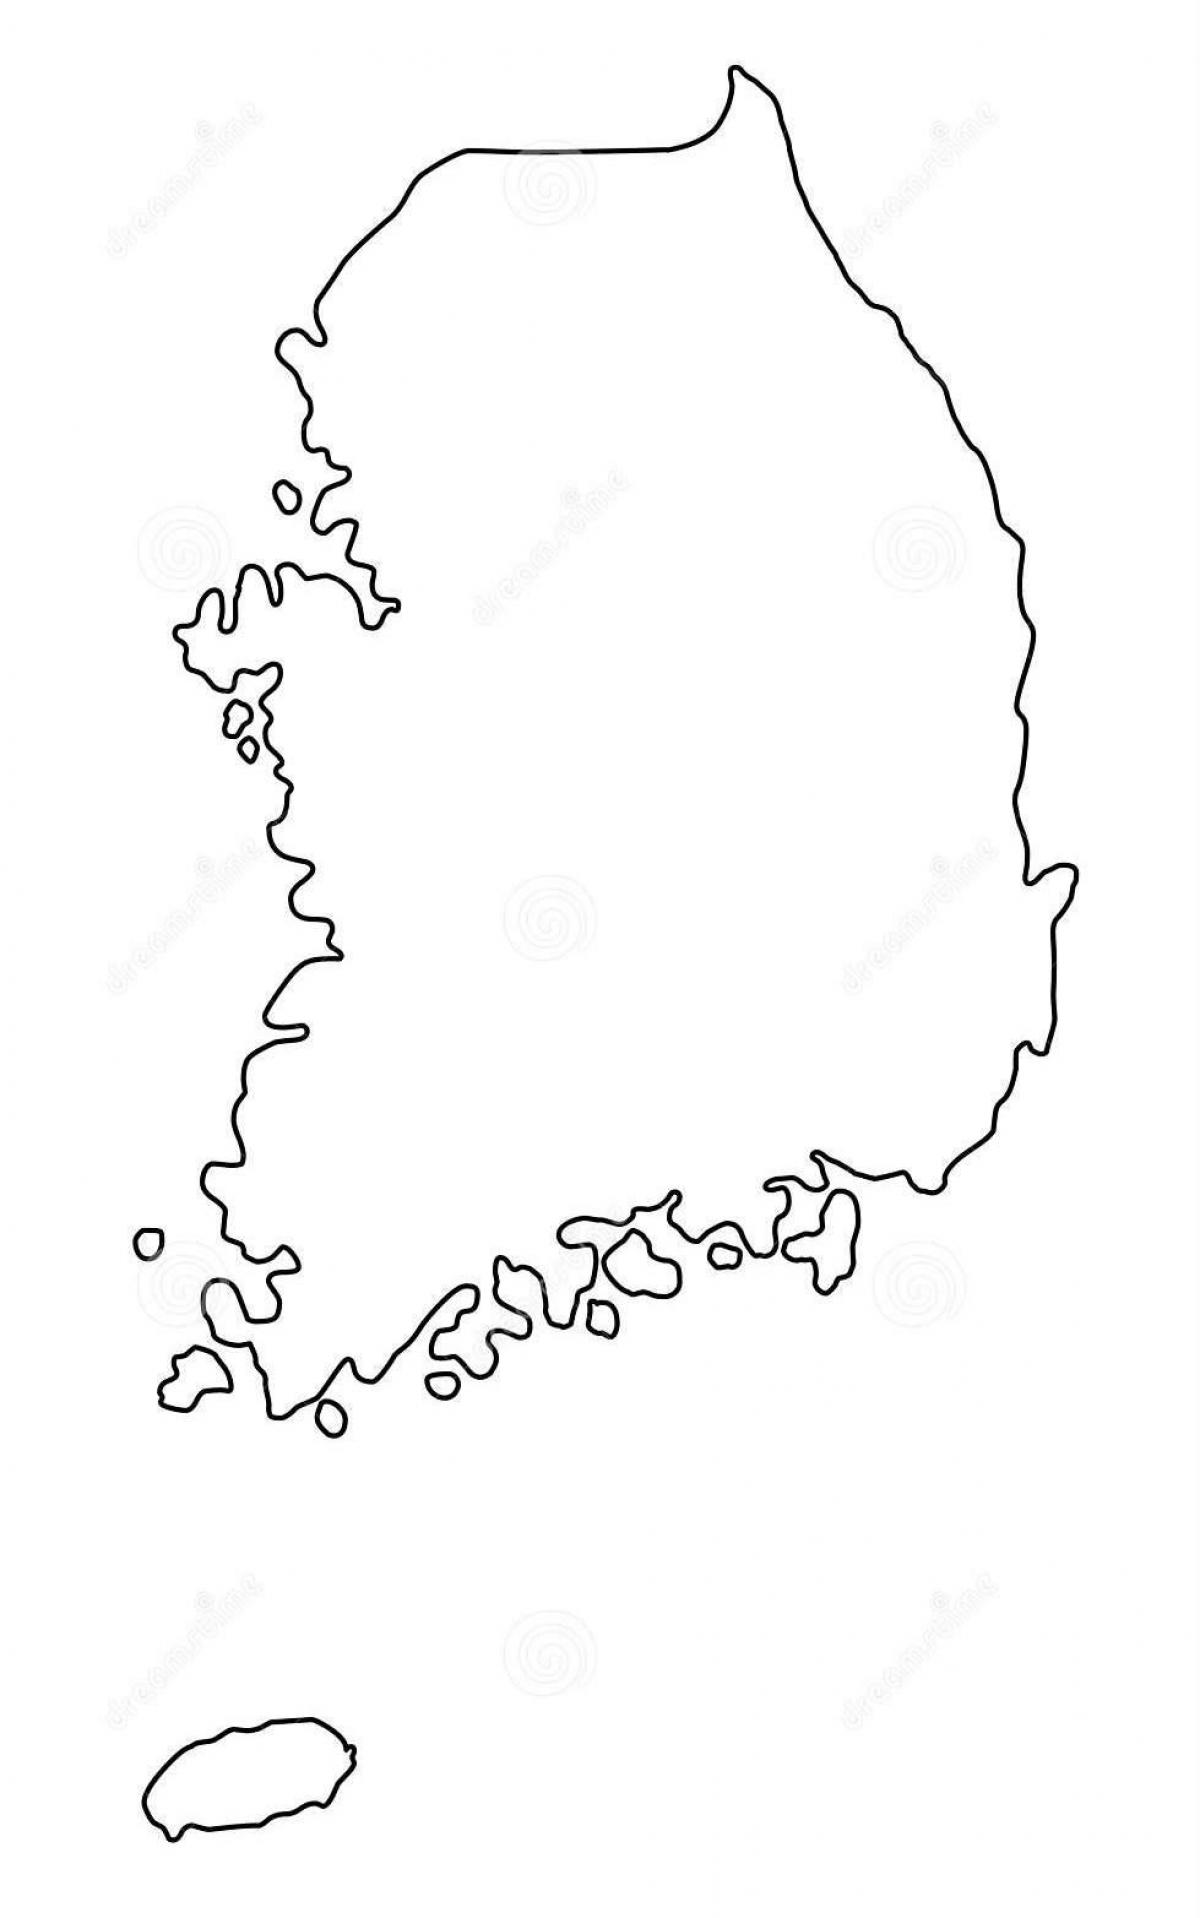 Mapa konturowa Korei Południowej (ROK)